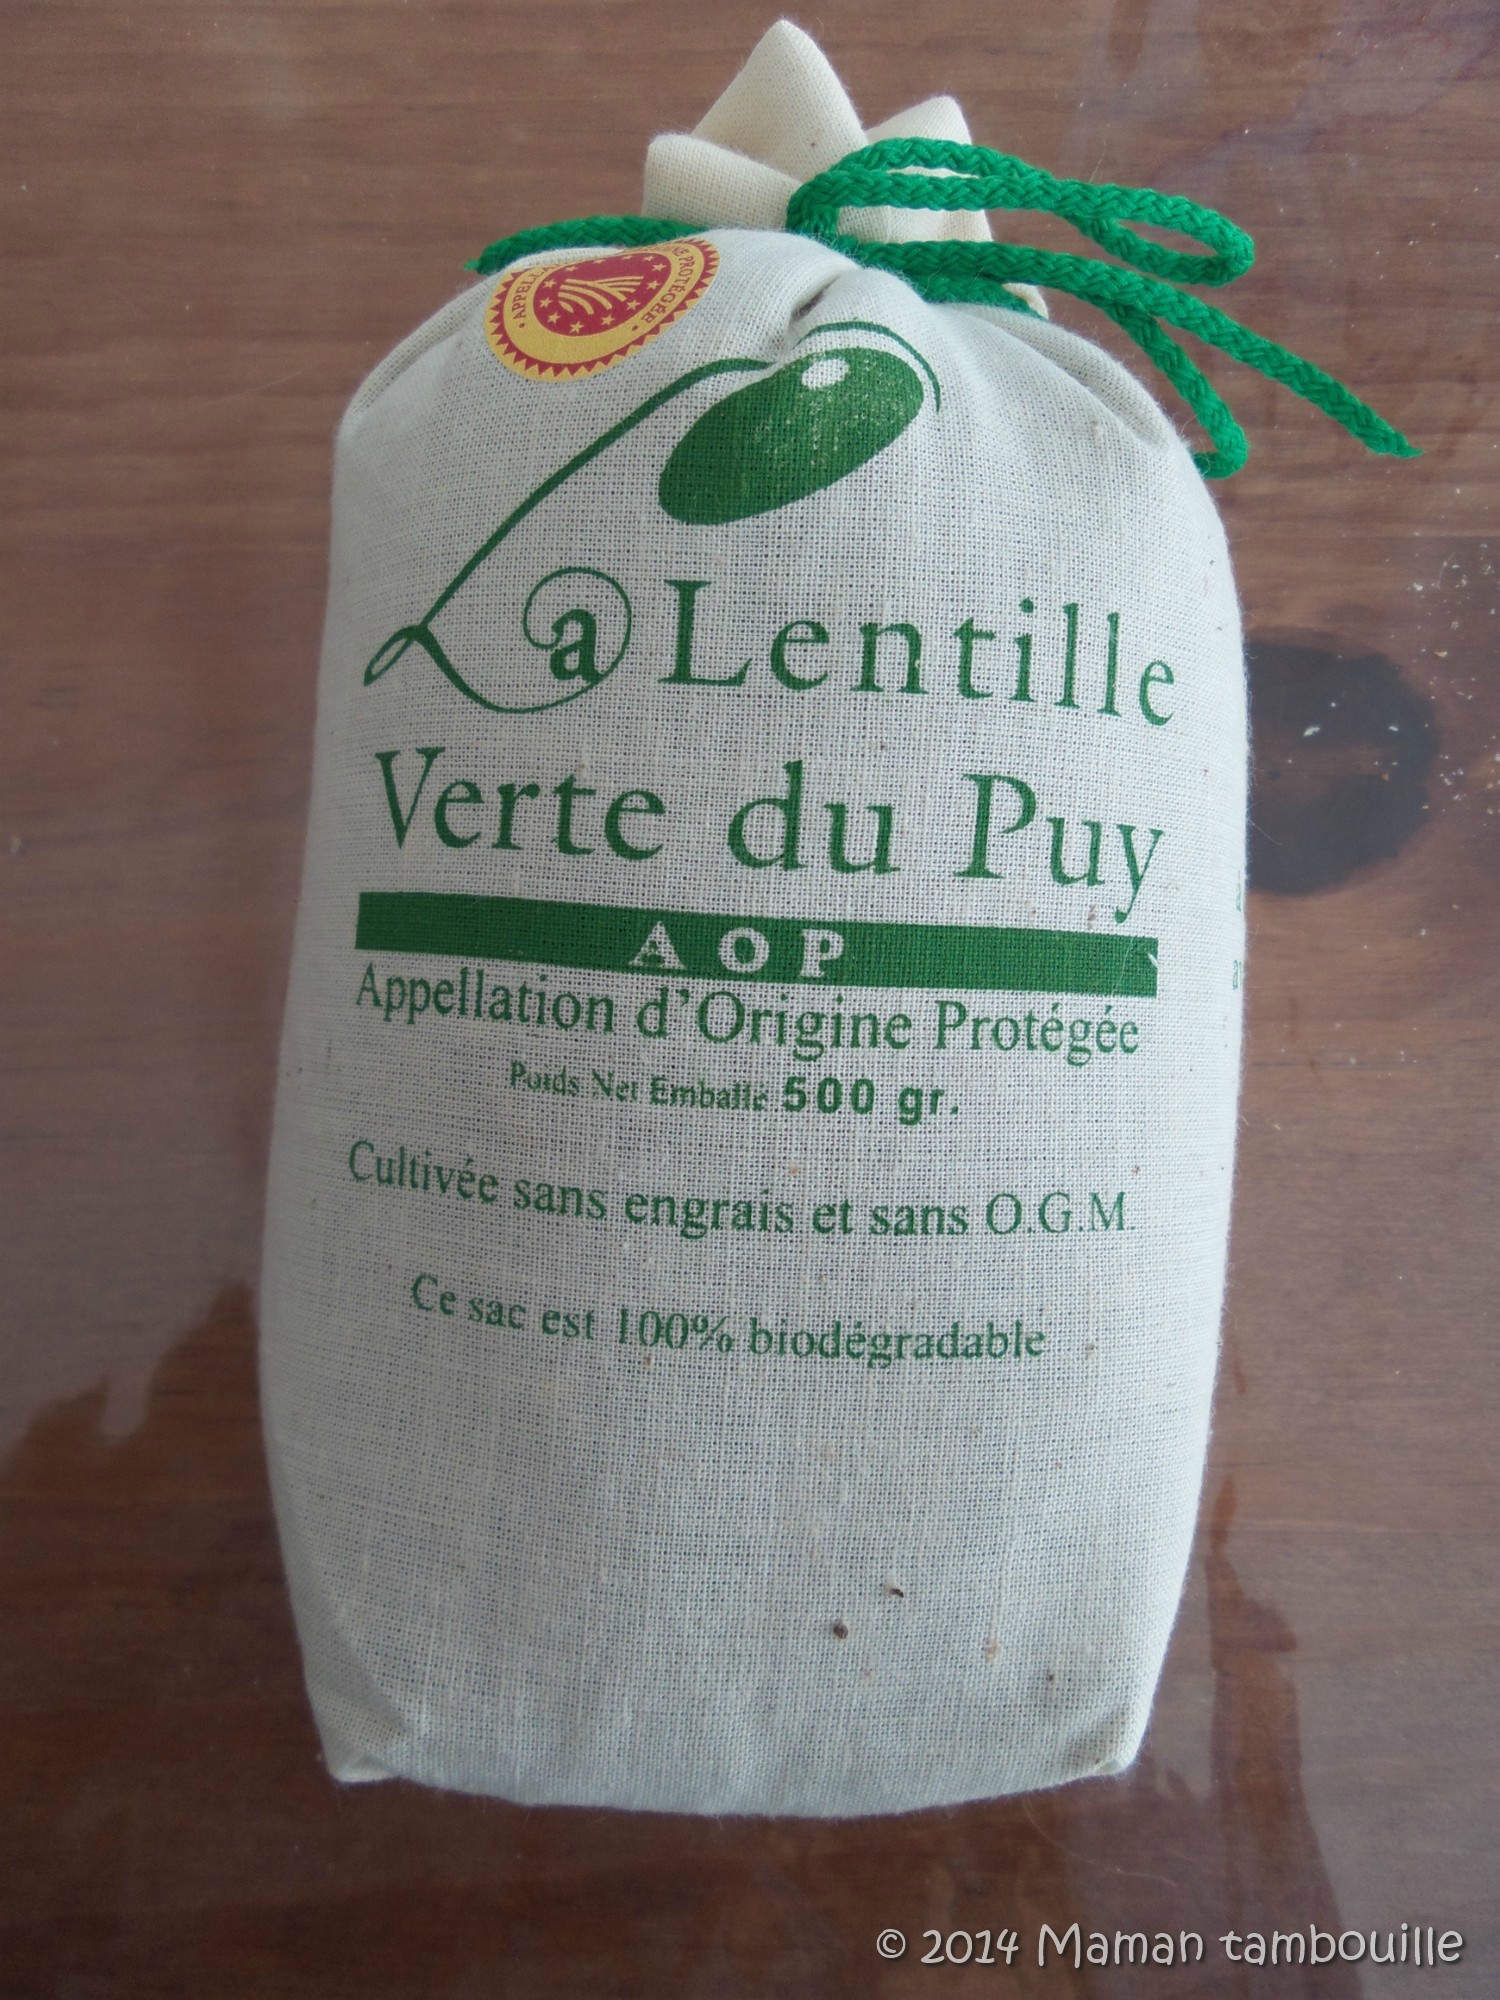 Read more about the article Nouveau partenaire La lentille verte du Puy